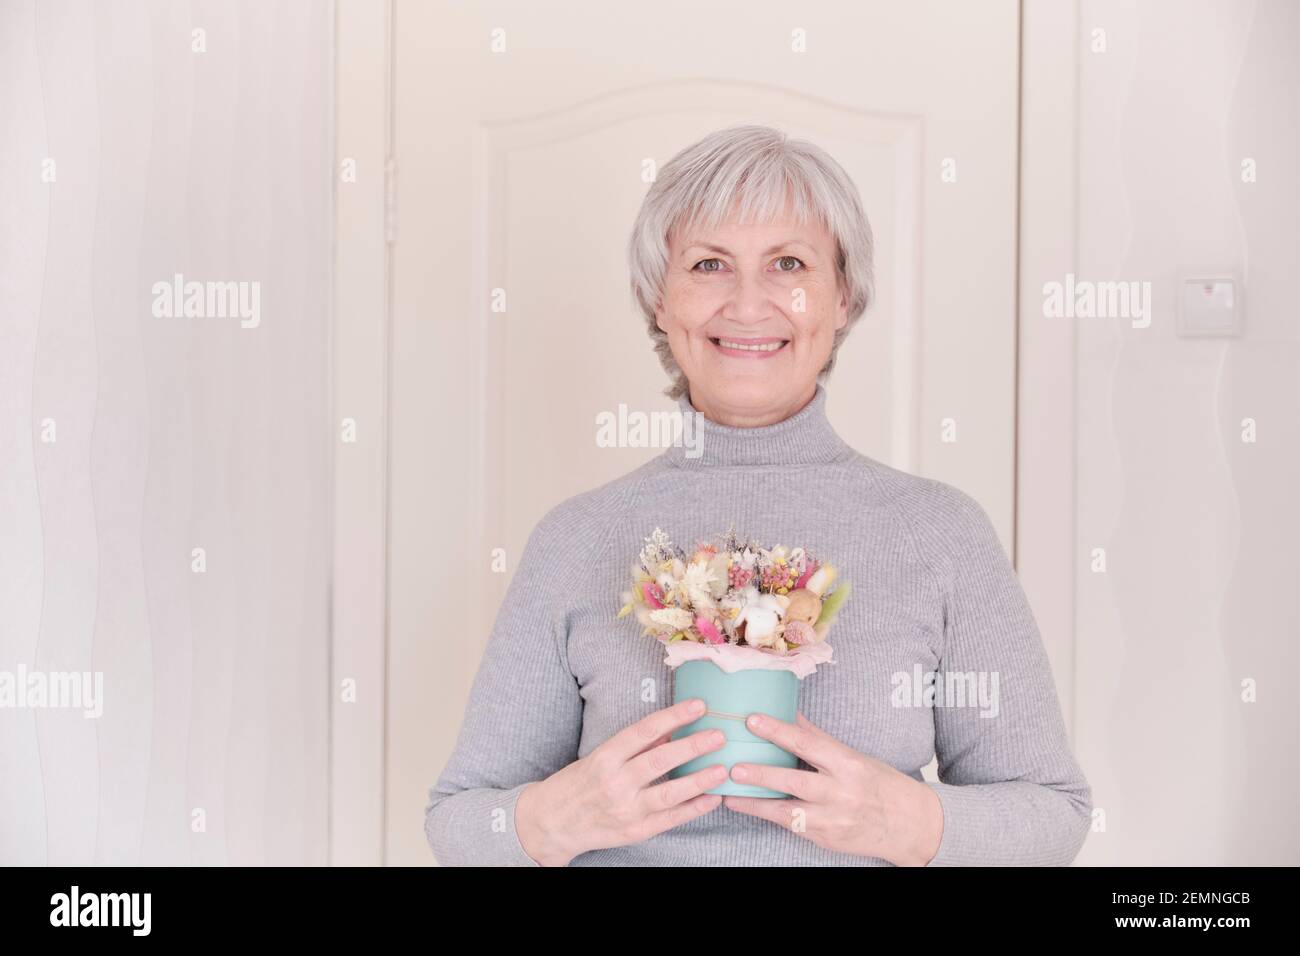 Un ritratto di una donna caucasica anziana sorridente con capelli grigi corti che tiene un bouquet di fiori secchi. Foto Stock